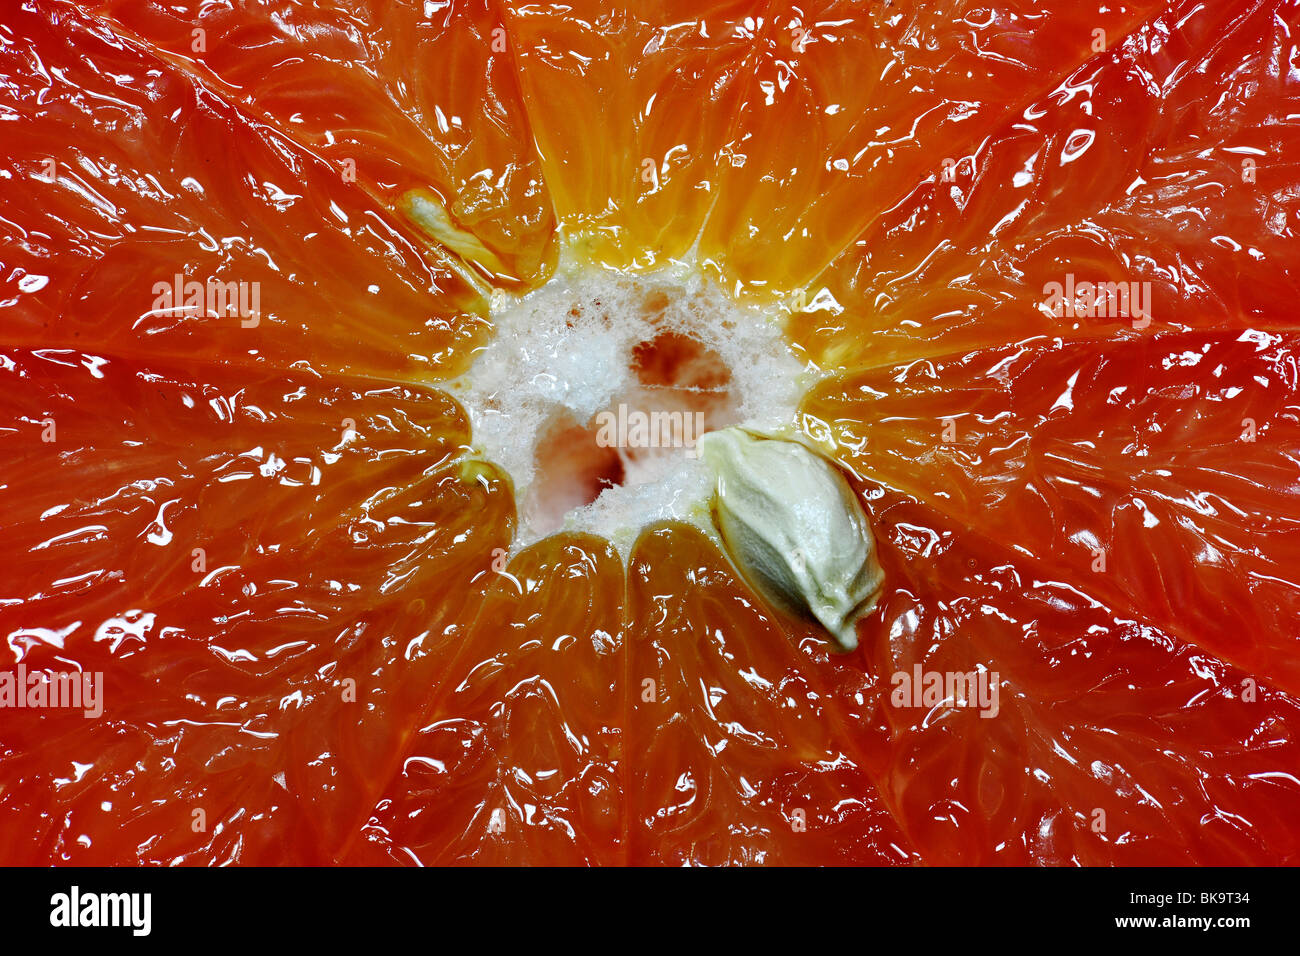 Red grapefruit (Citrus paradisi), cut, close-up Stock Photo